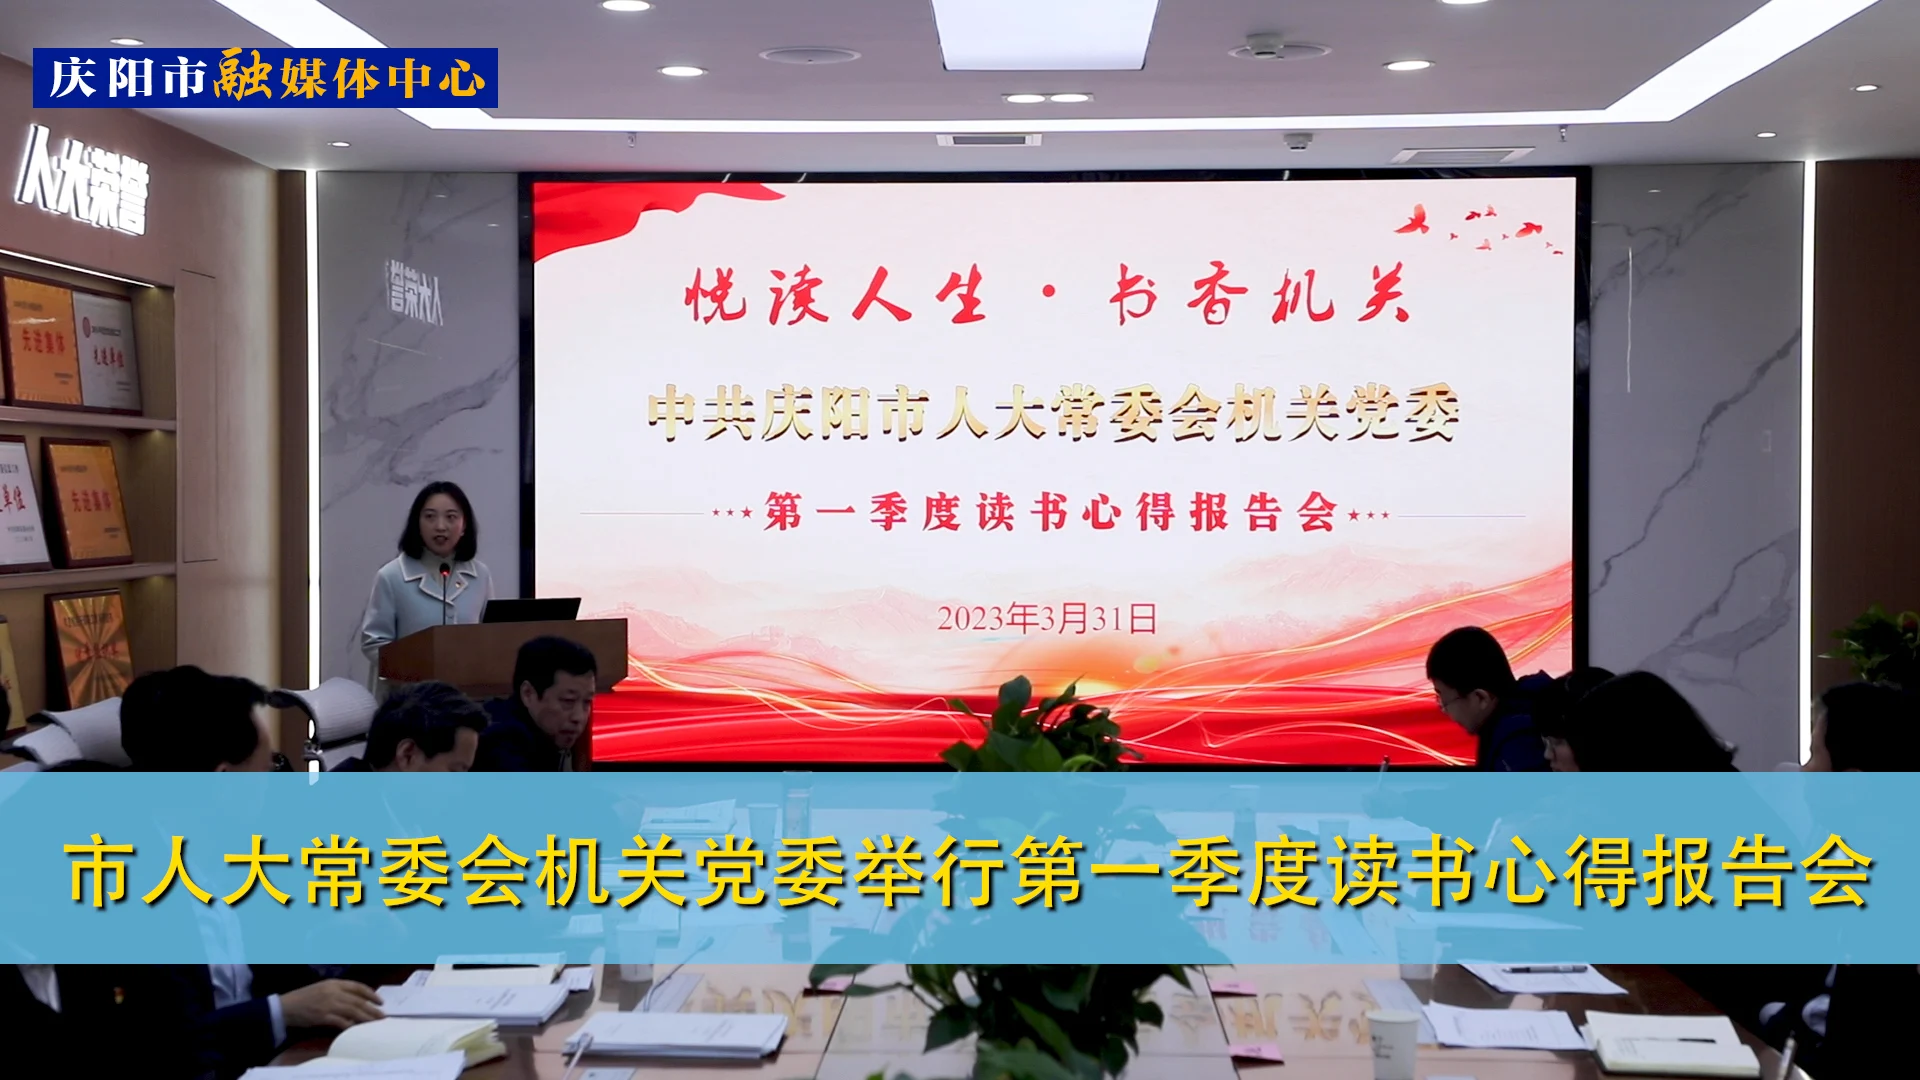 【第一眼】庆阳市人大常委会机关党委举行第一季度读书心得报告会